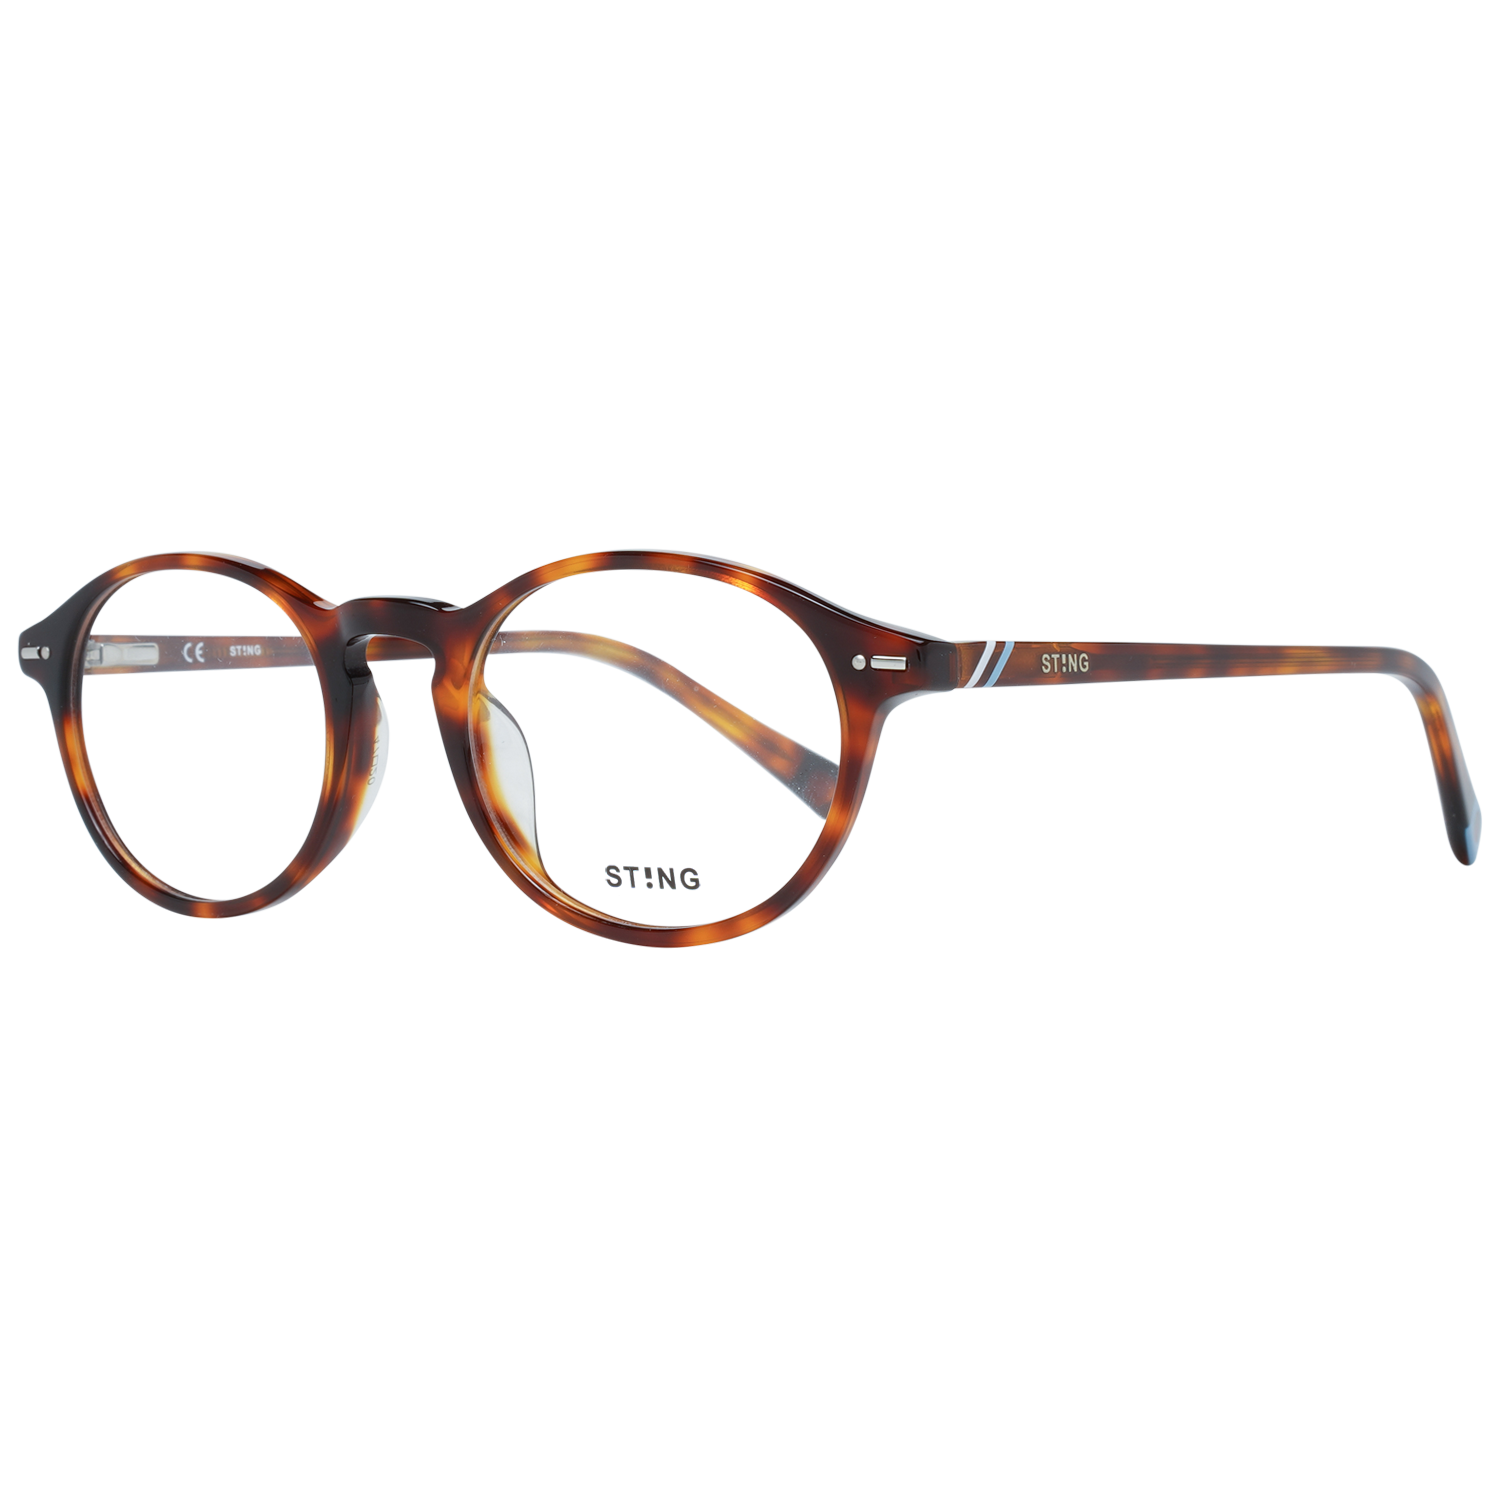 Sting Frames Sting Optical Frame VS6527V 09AT 47 Eyeglasses Eyewear UK USA Australia 